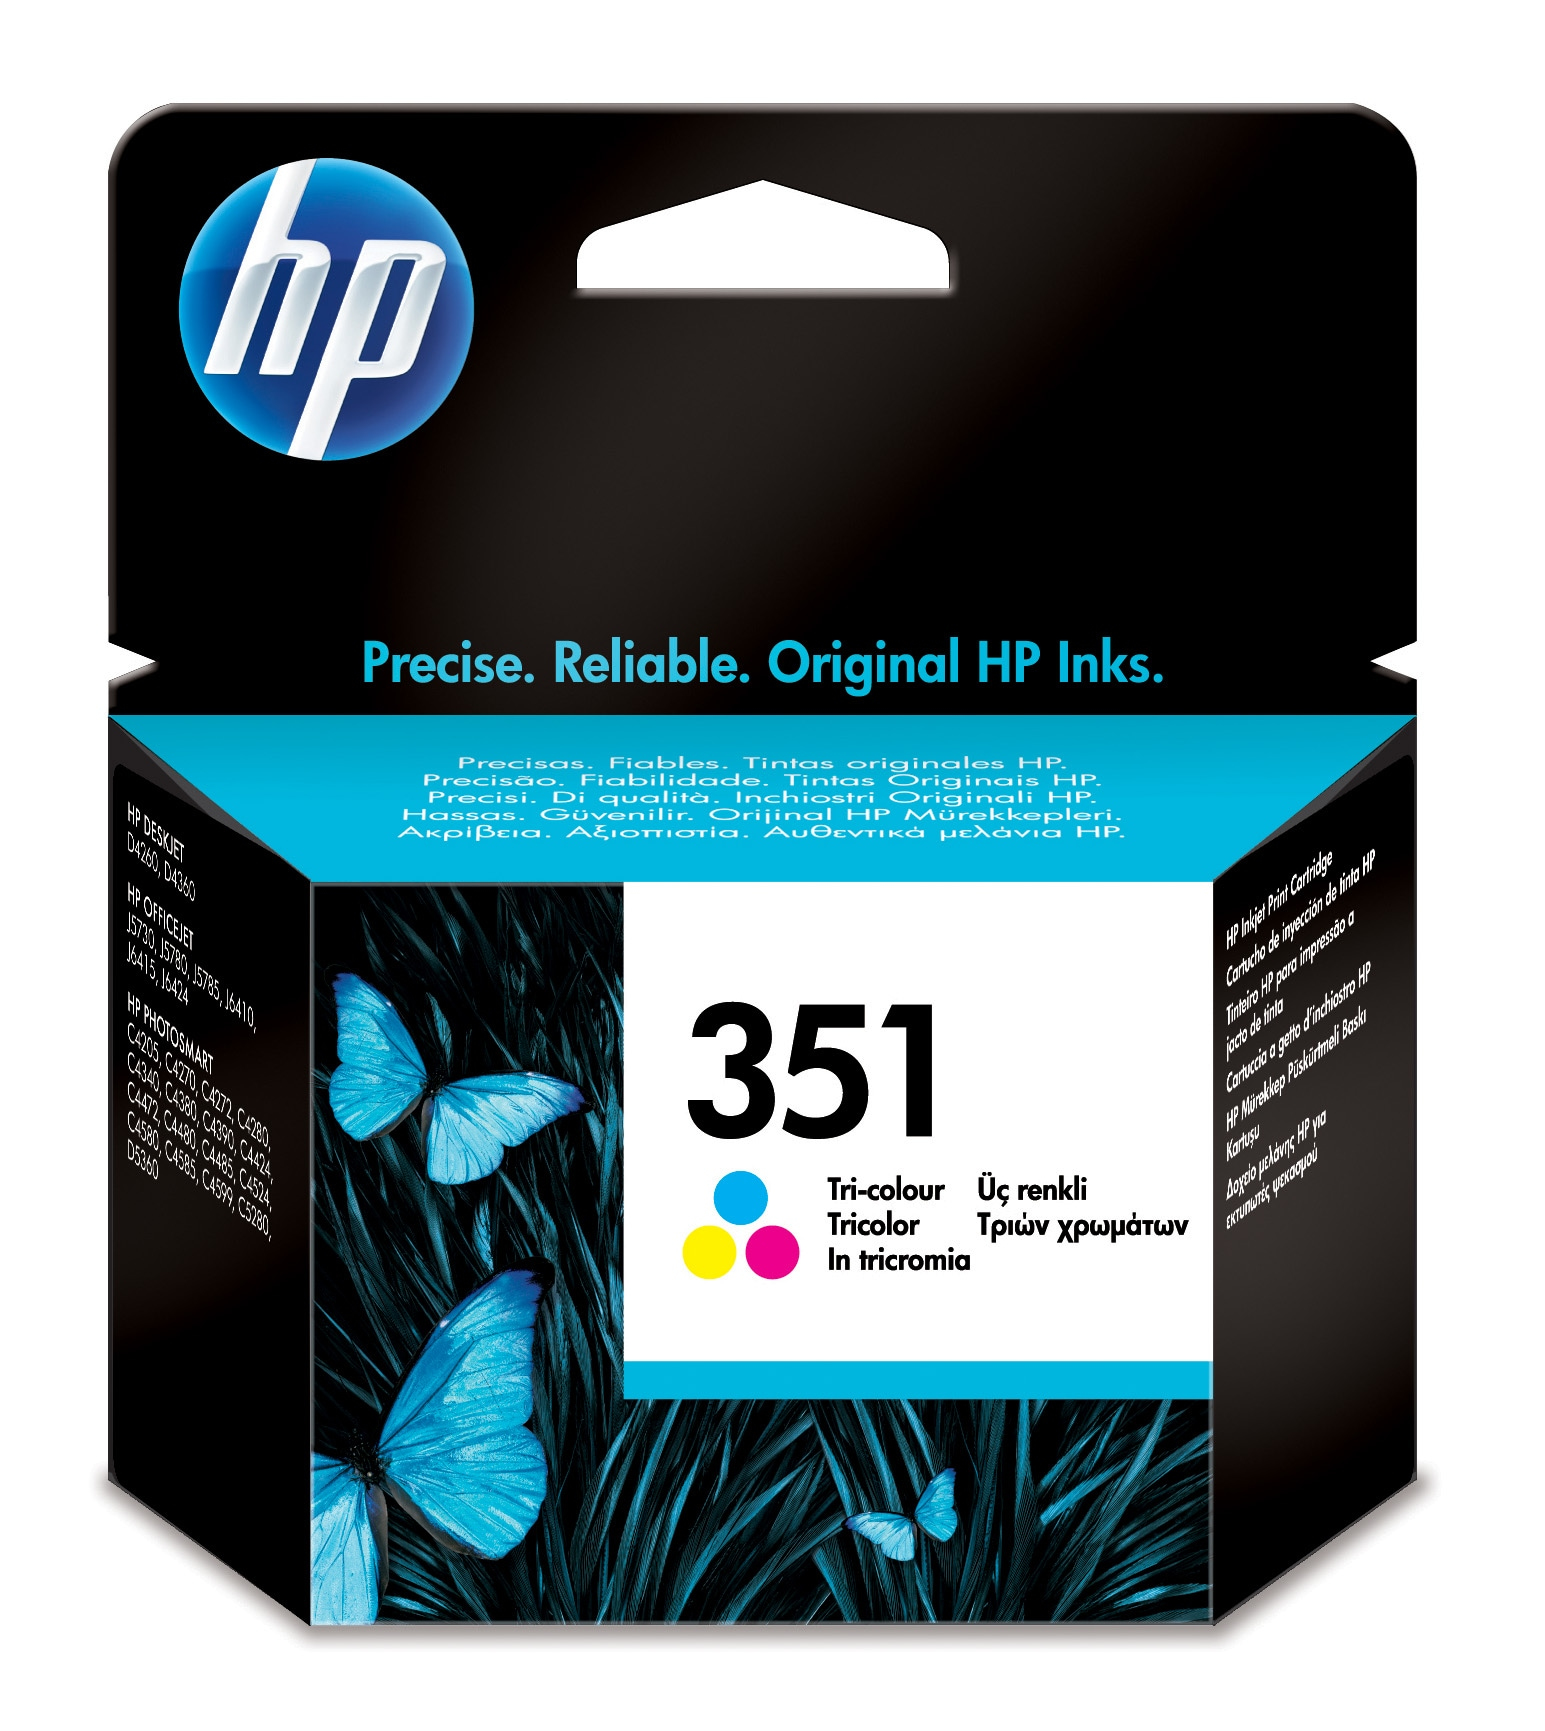 HP 351 inktcartridge drie kleuren low capacity 3.5ml 170 pagina s 1-pack